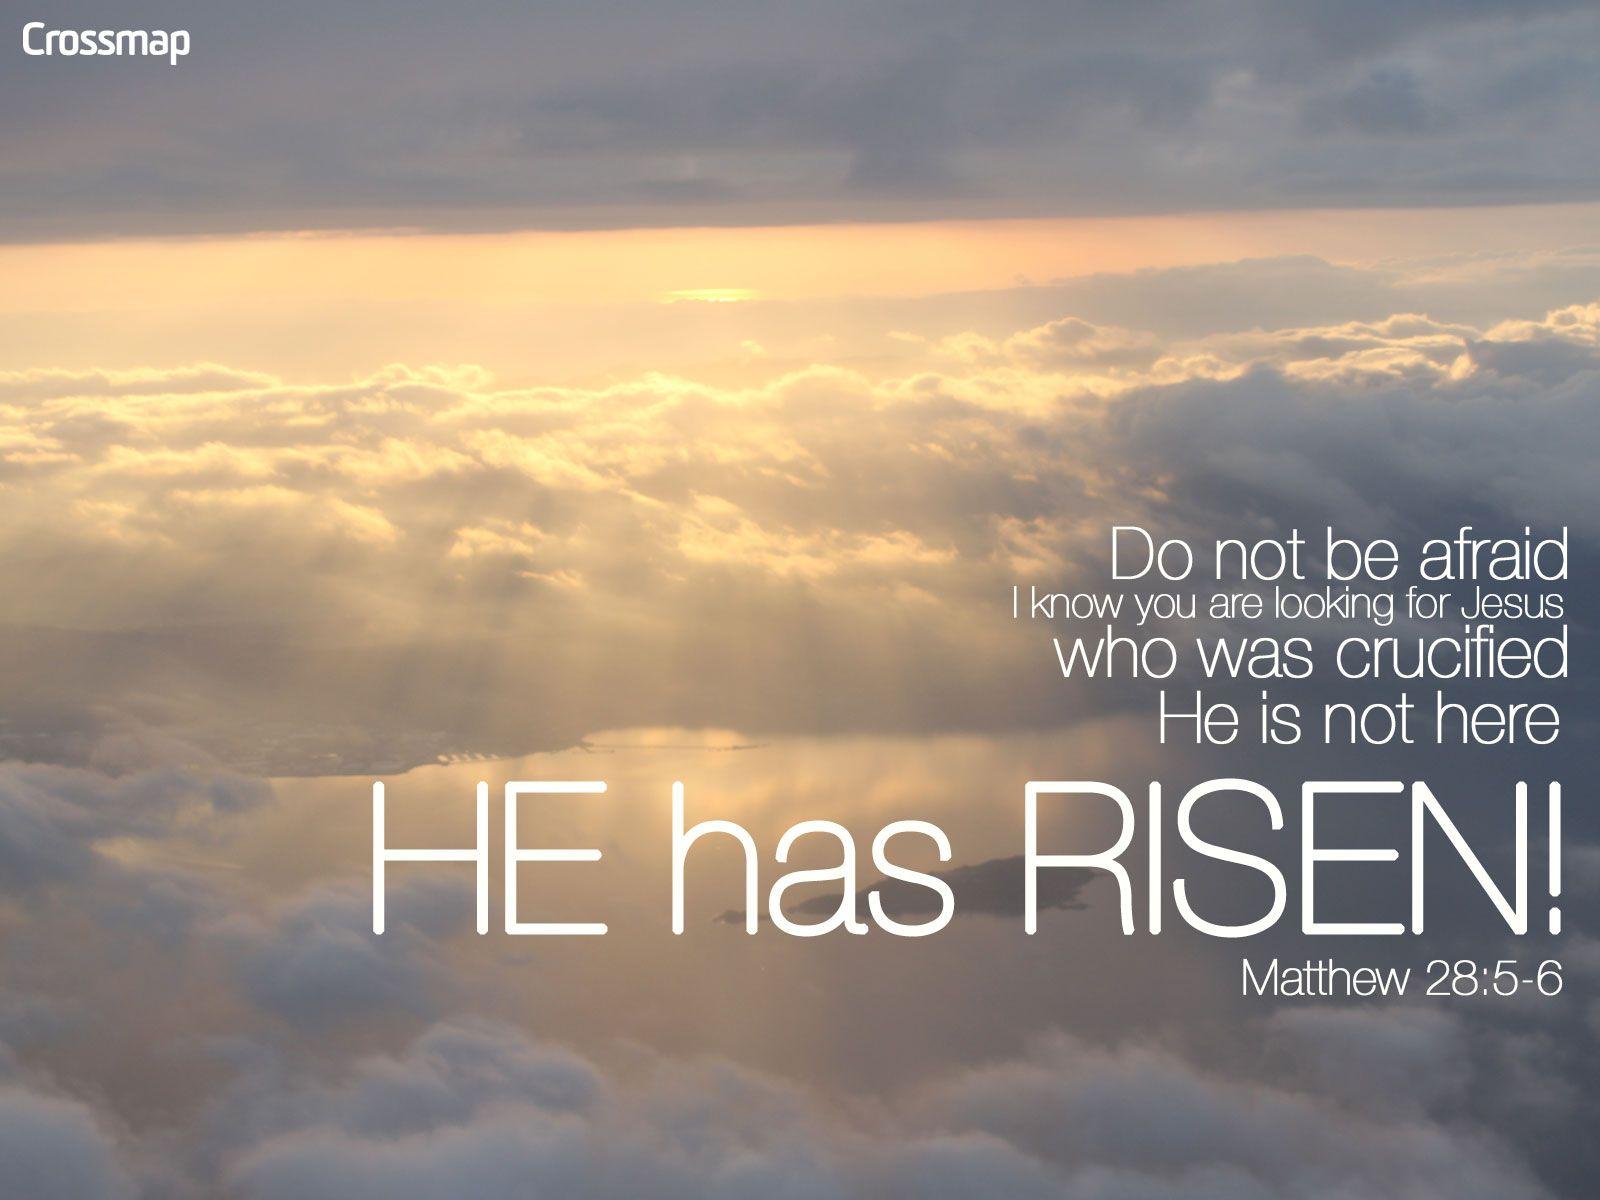 He Has Risen!